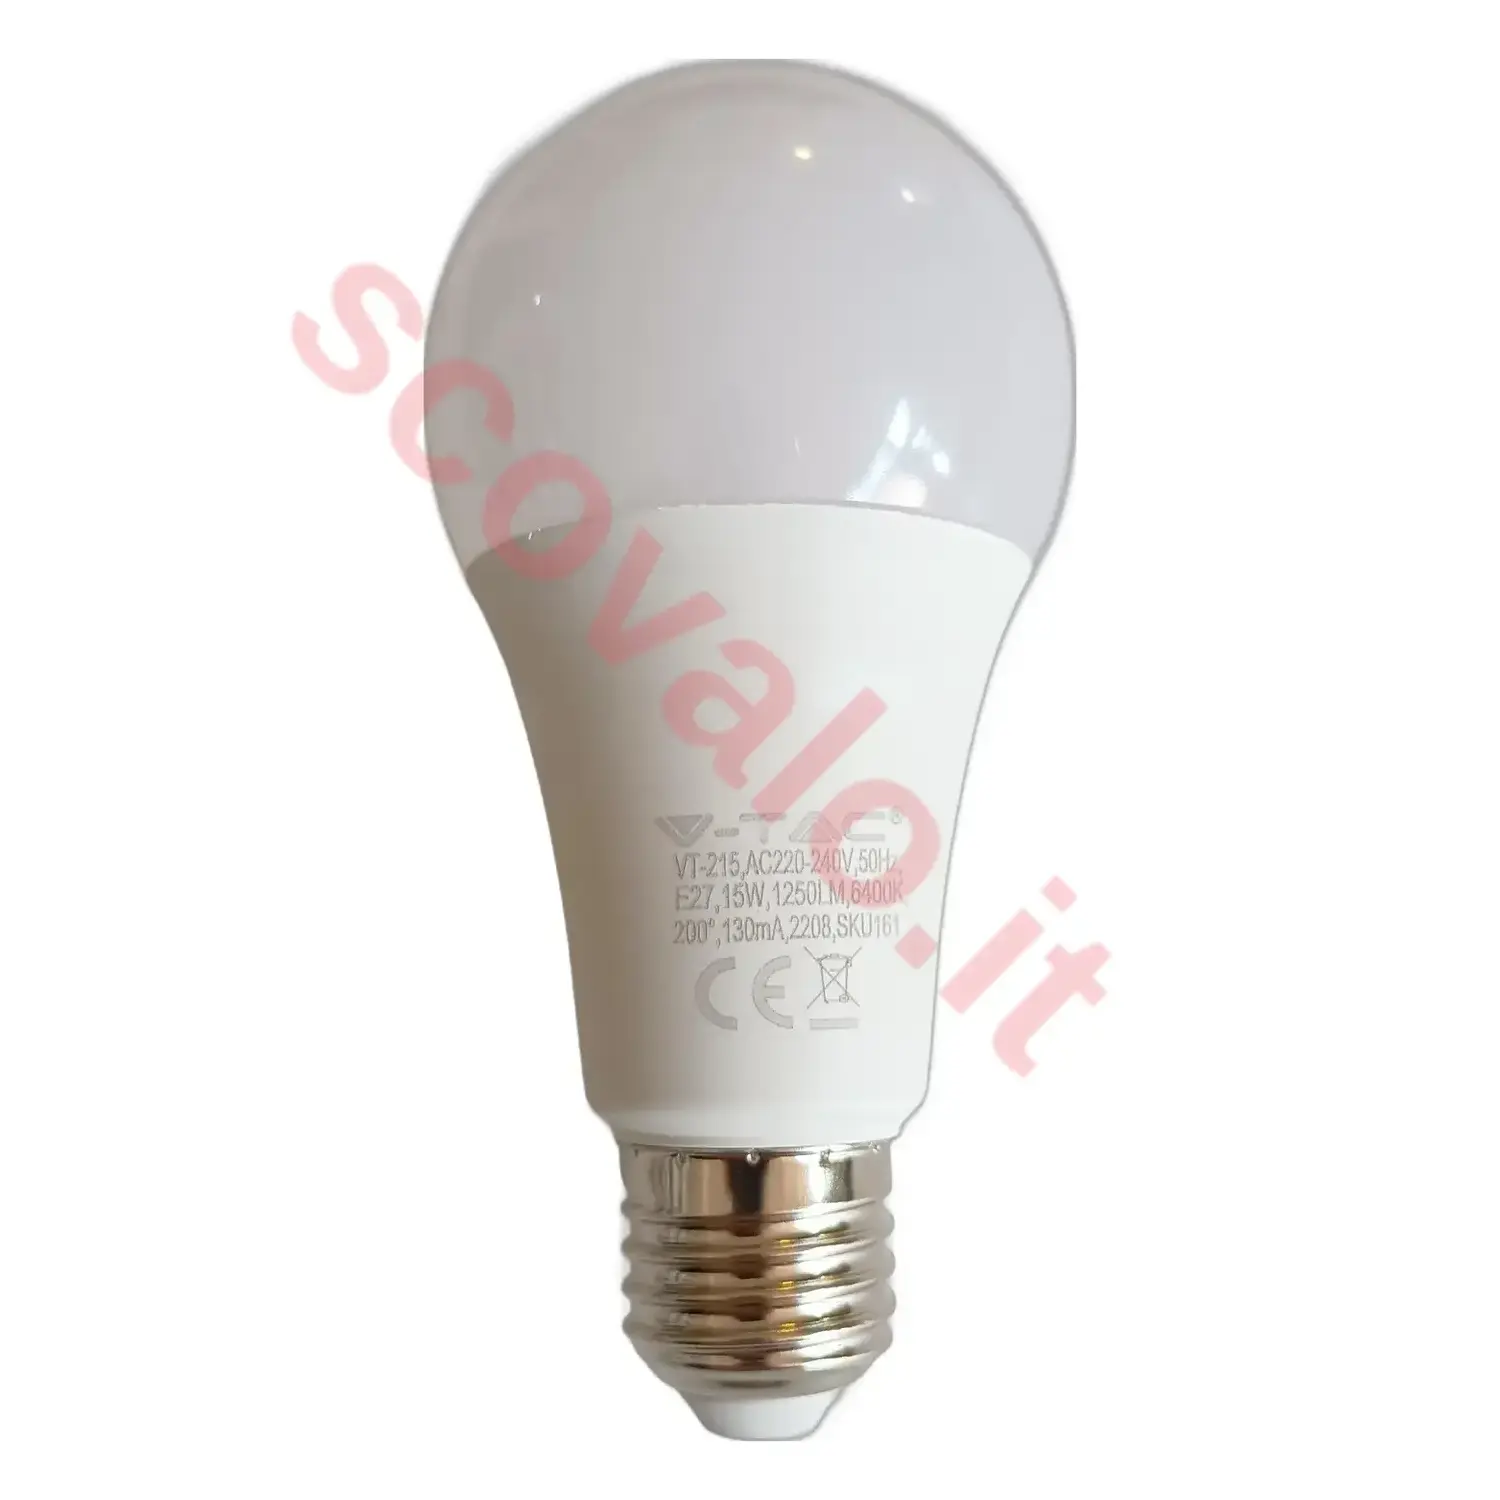 immagine lampadina led bulbo classico chip samsung A65 e27 15 watt bianco freddo